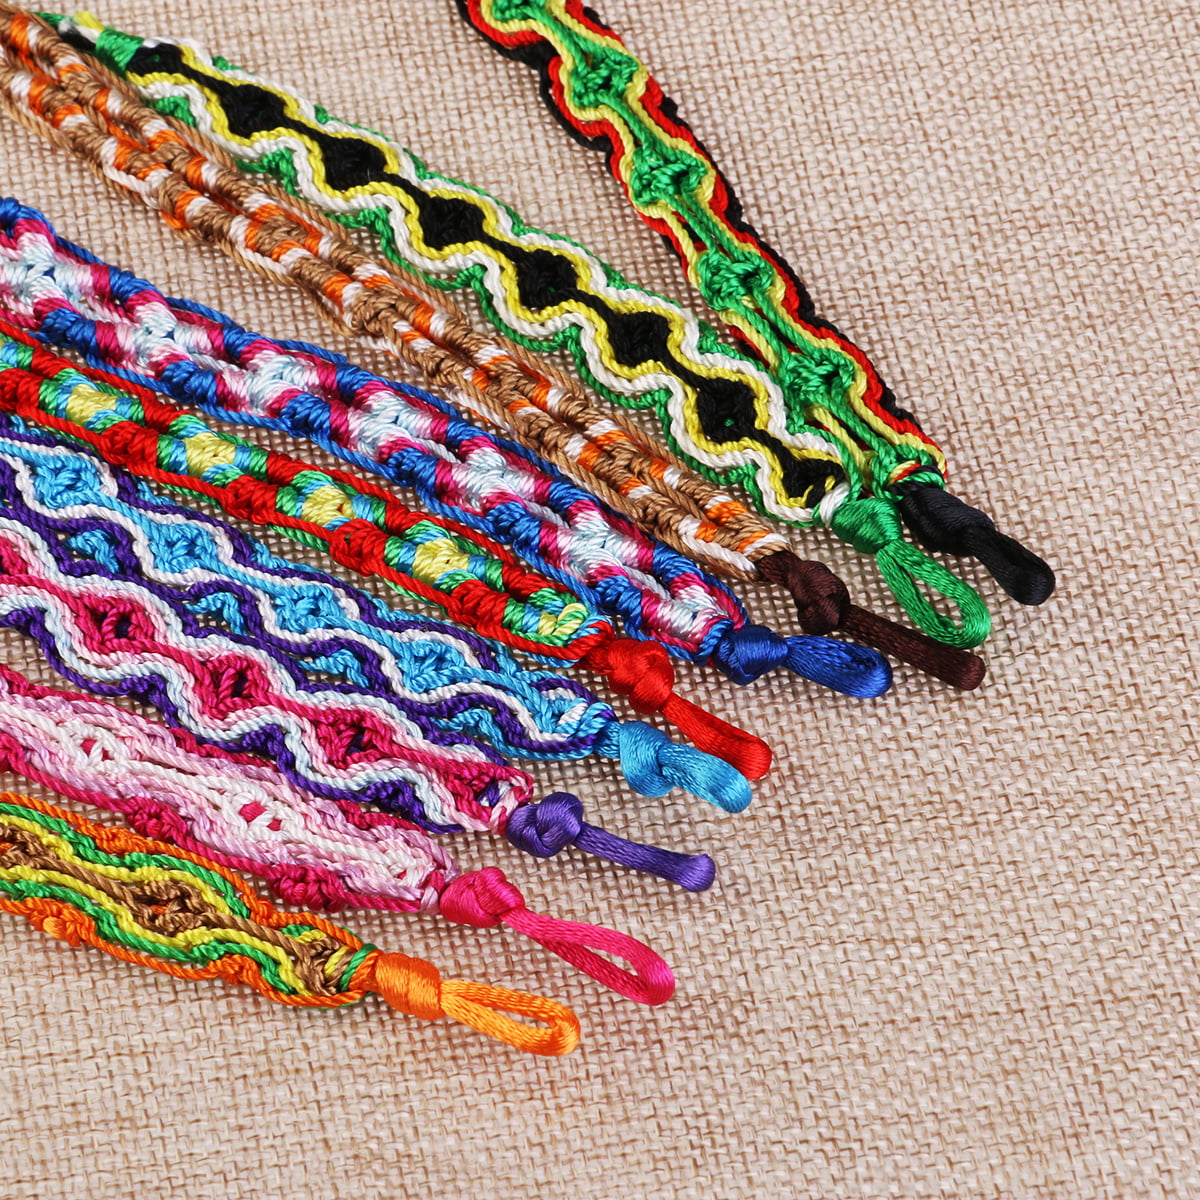 Unavailable Listing on Etsy | Hippie bracelets, Friendship bracelet  patterns, Yarn bracelets